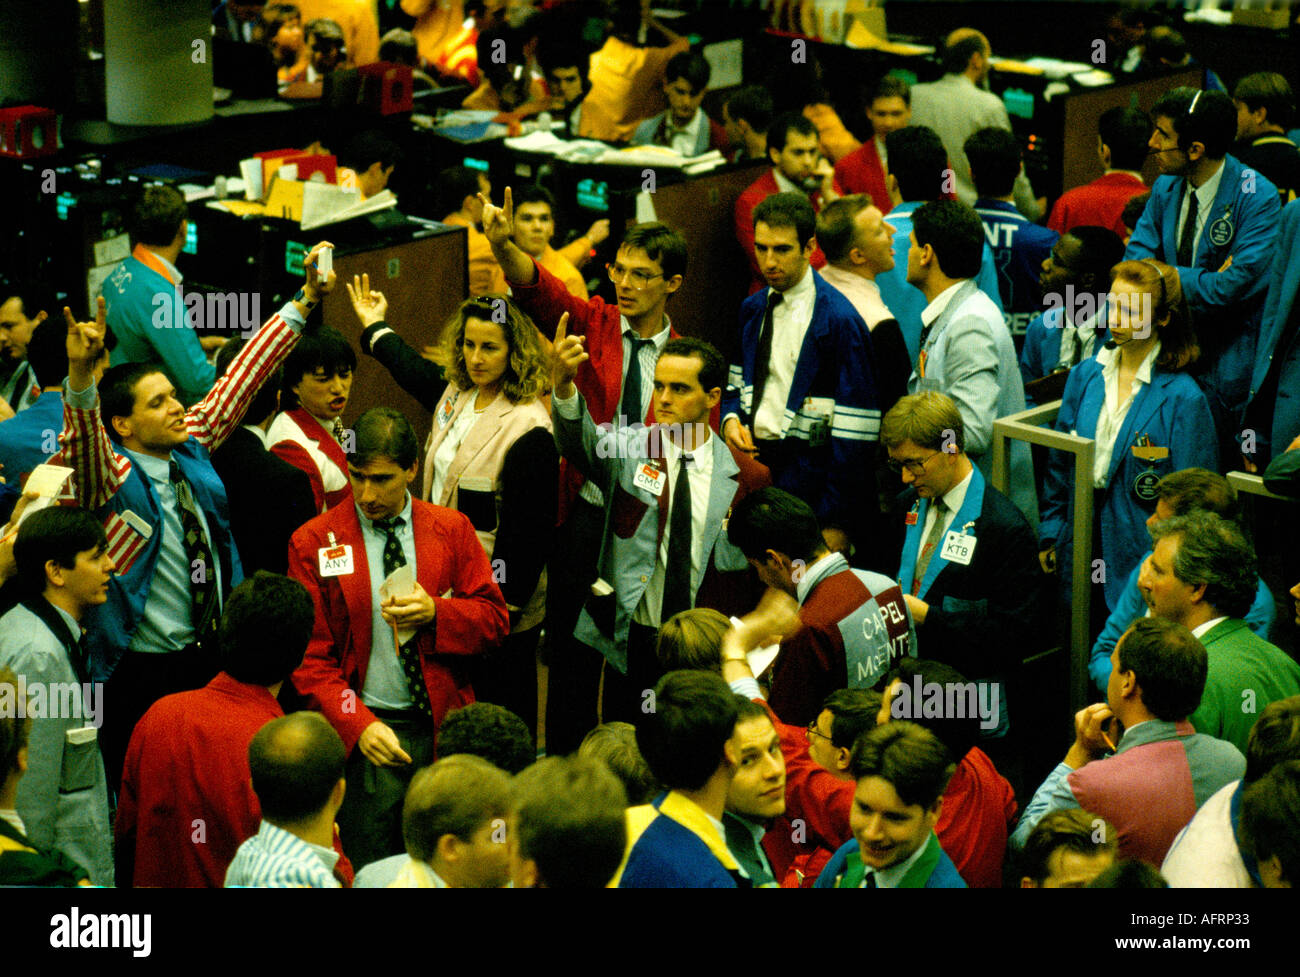 LIFFE années 1990 City of London stock traders Royaume-Uni. Plancher des opérations de change de la Bourse internationale de Londres. 1991 HOMER SYKES Banque D'Images